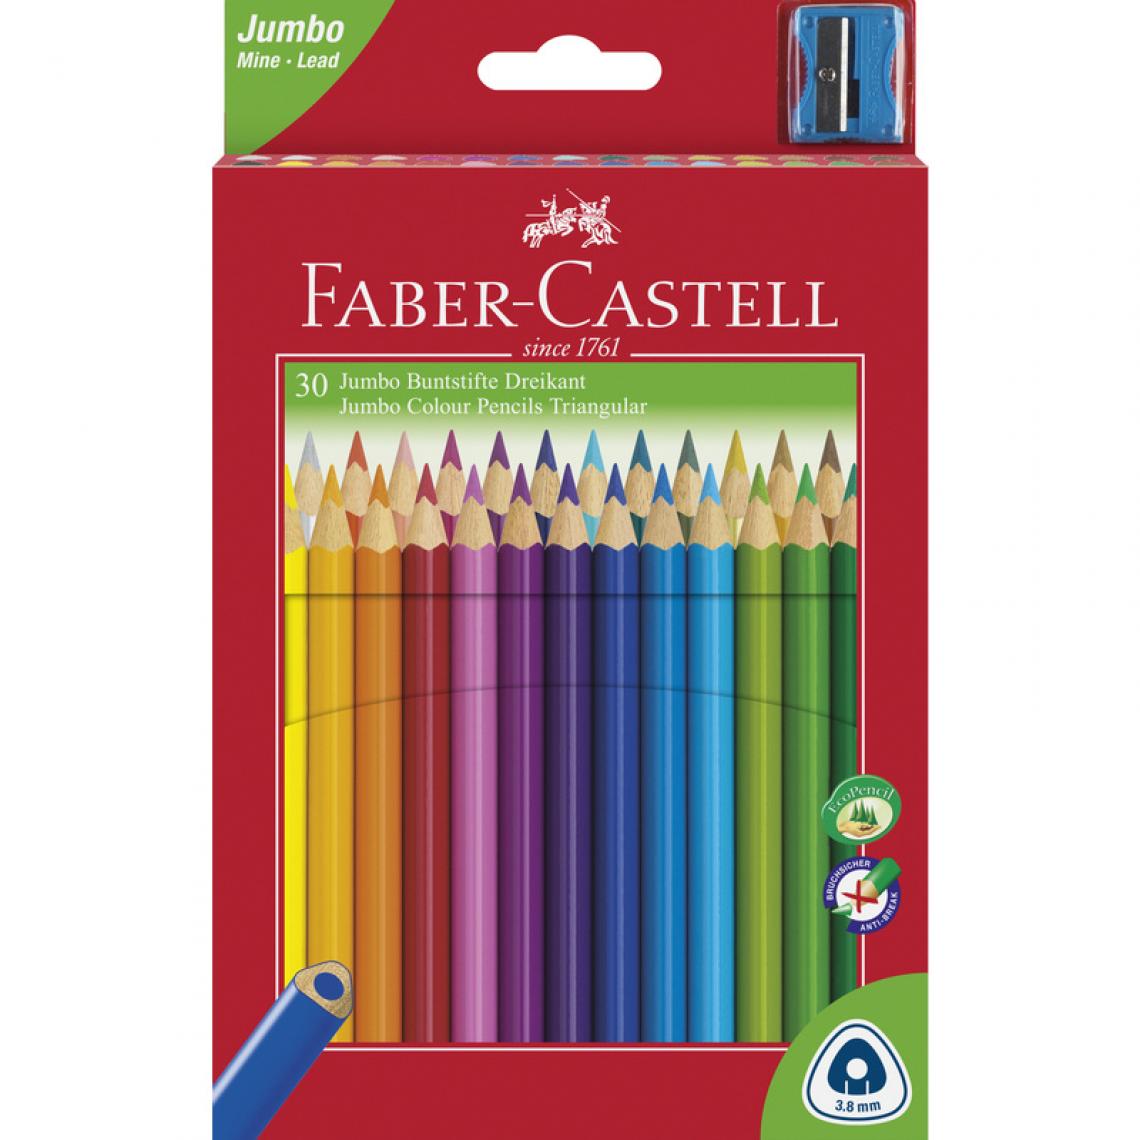 Faber-Castell - FABER-CASTELL Crayons de couleur Jumbo triangulaire, 30 étui () - Bricolage et jardinage